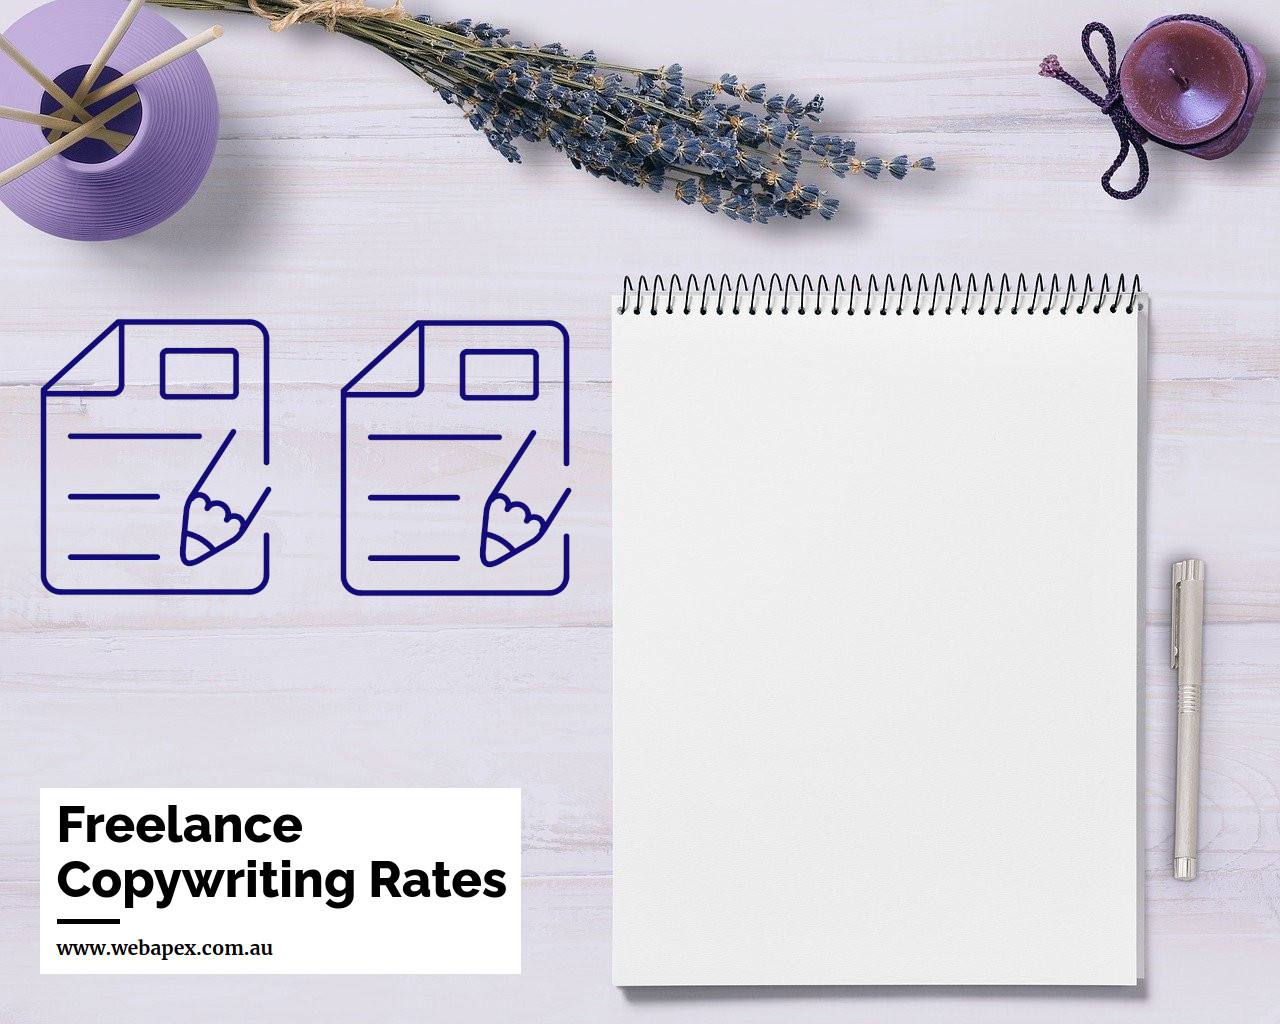 Freelance Copywriting Rates